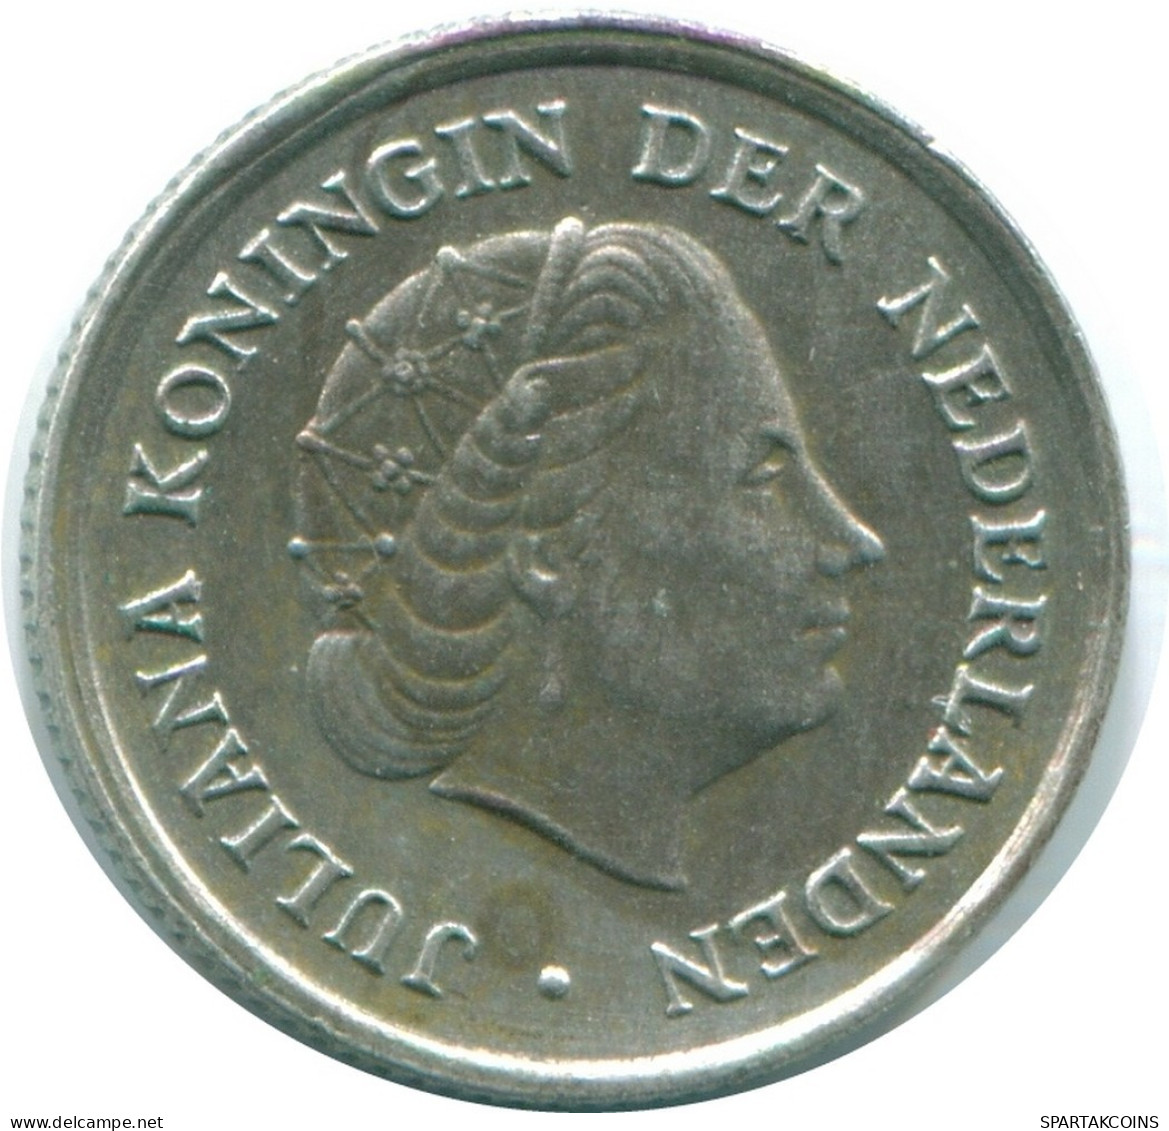 1/10 GULDEN 1970 NIEDERLÄNDISCHE ANTILLEN SILBER Koloniale Münze #NL13004.3.D.A - Niederländische Antillen